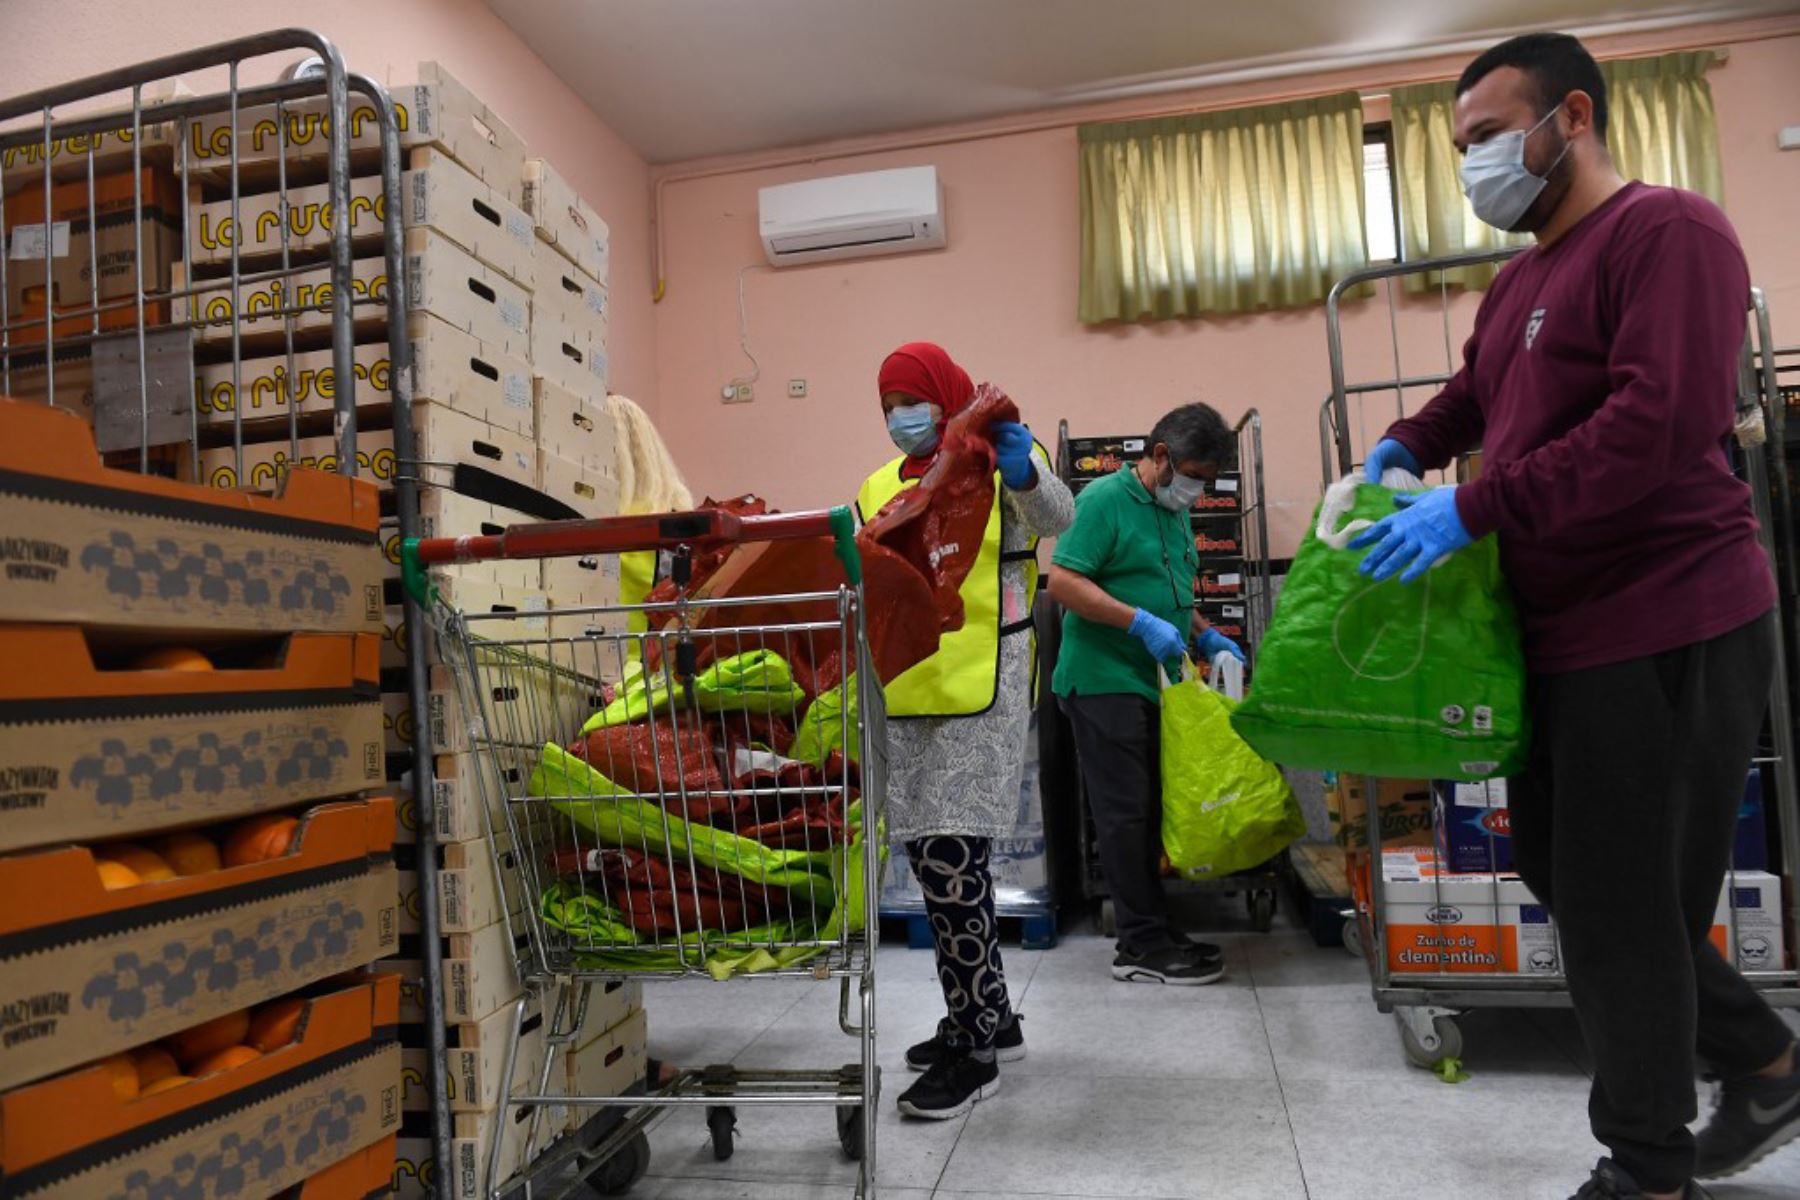 Los voluntarios preparan raciones de alimentos para distribuir a las personas necesitadas en el banco de alimentos de la Asociación Nazaret en Madrid.
Foto: AFP